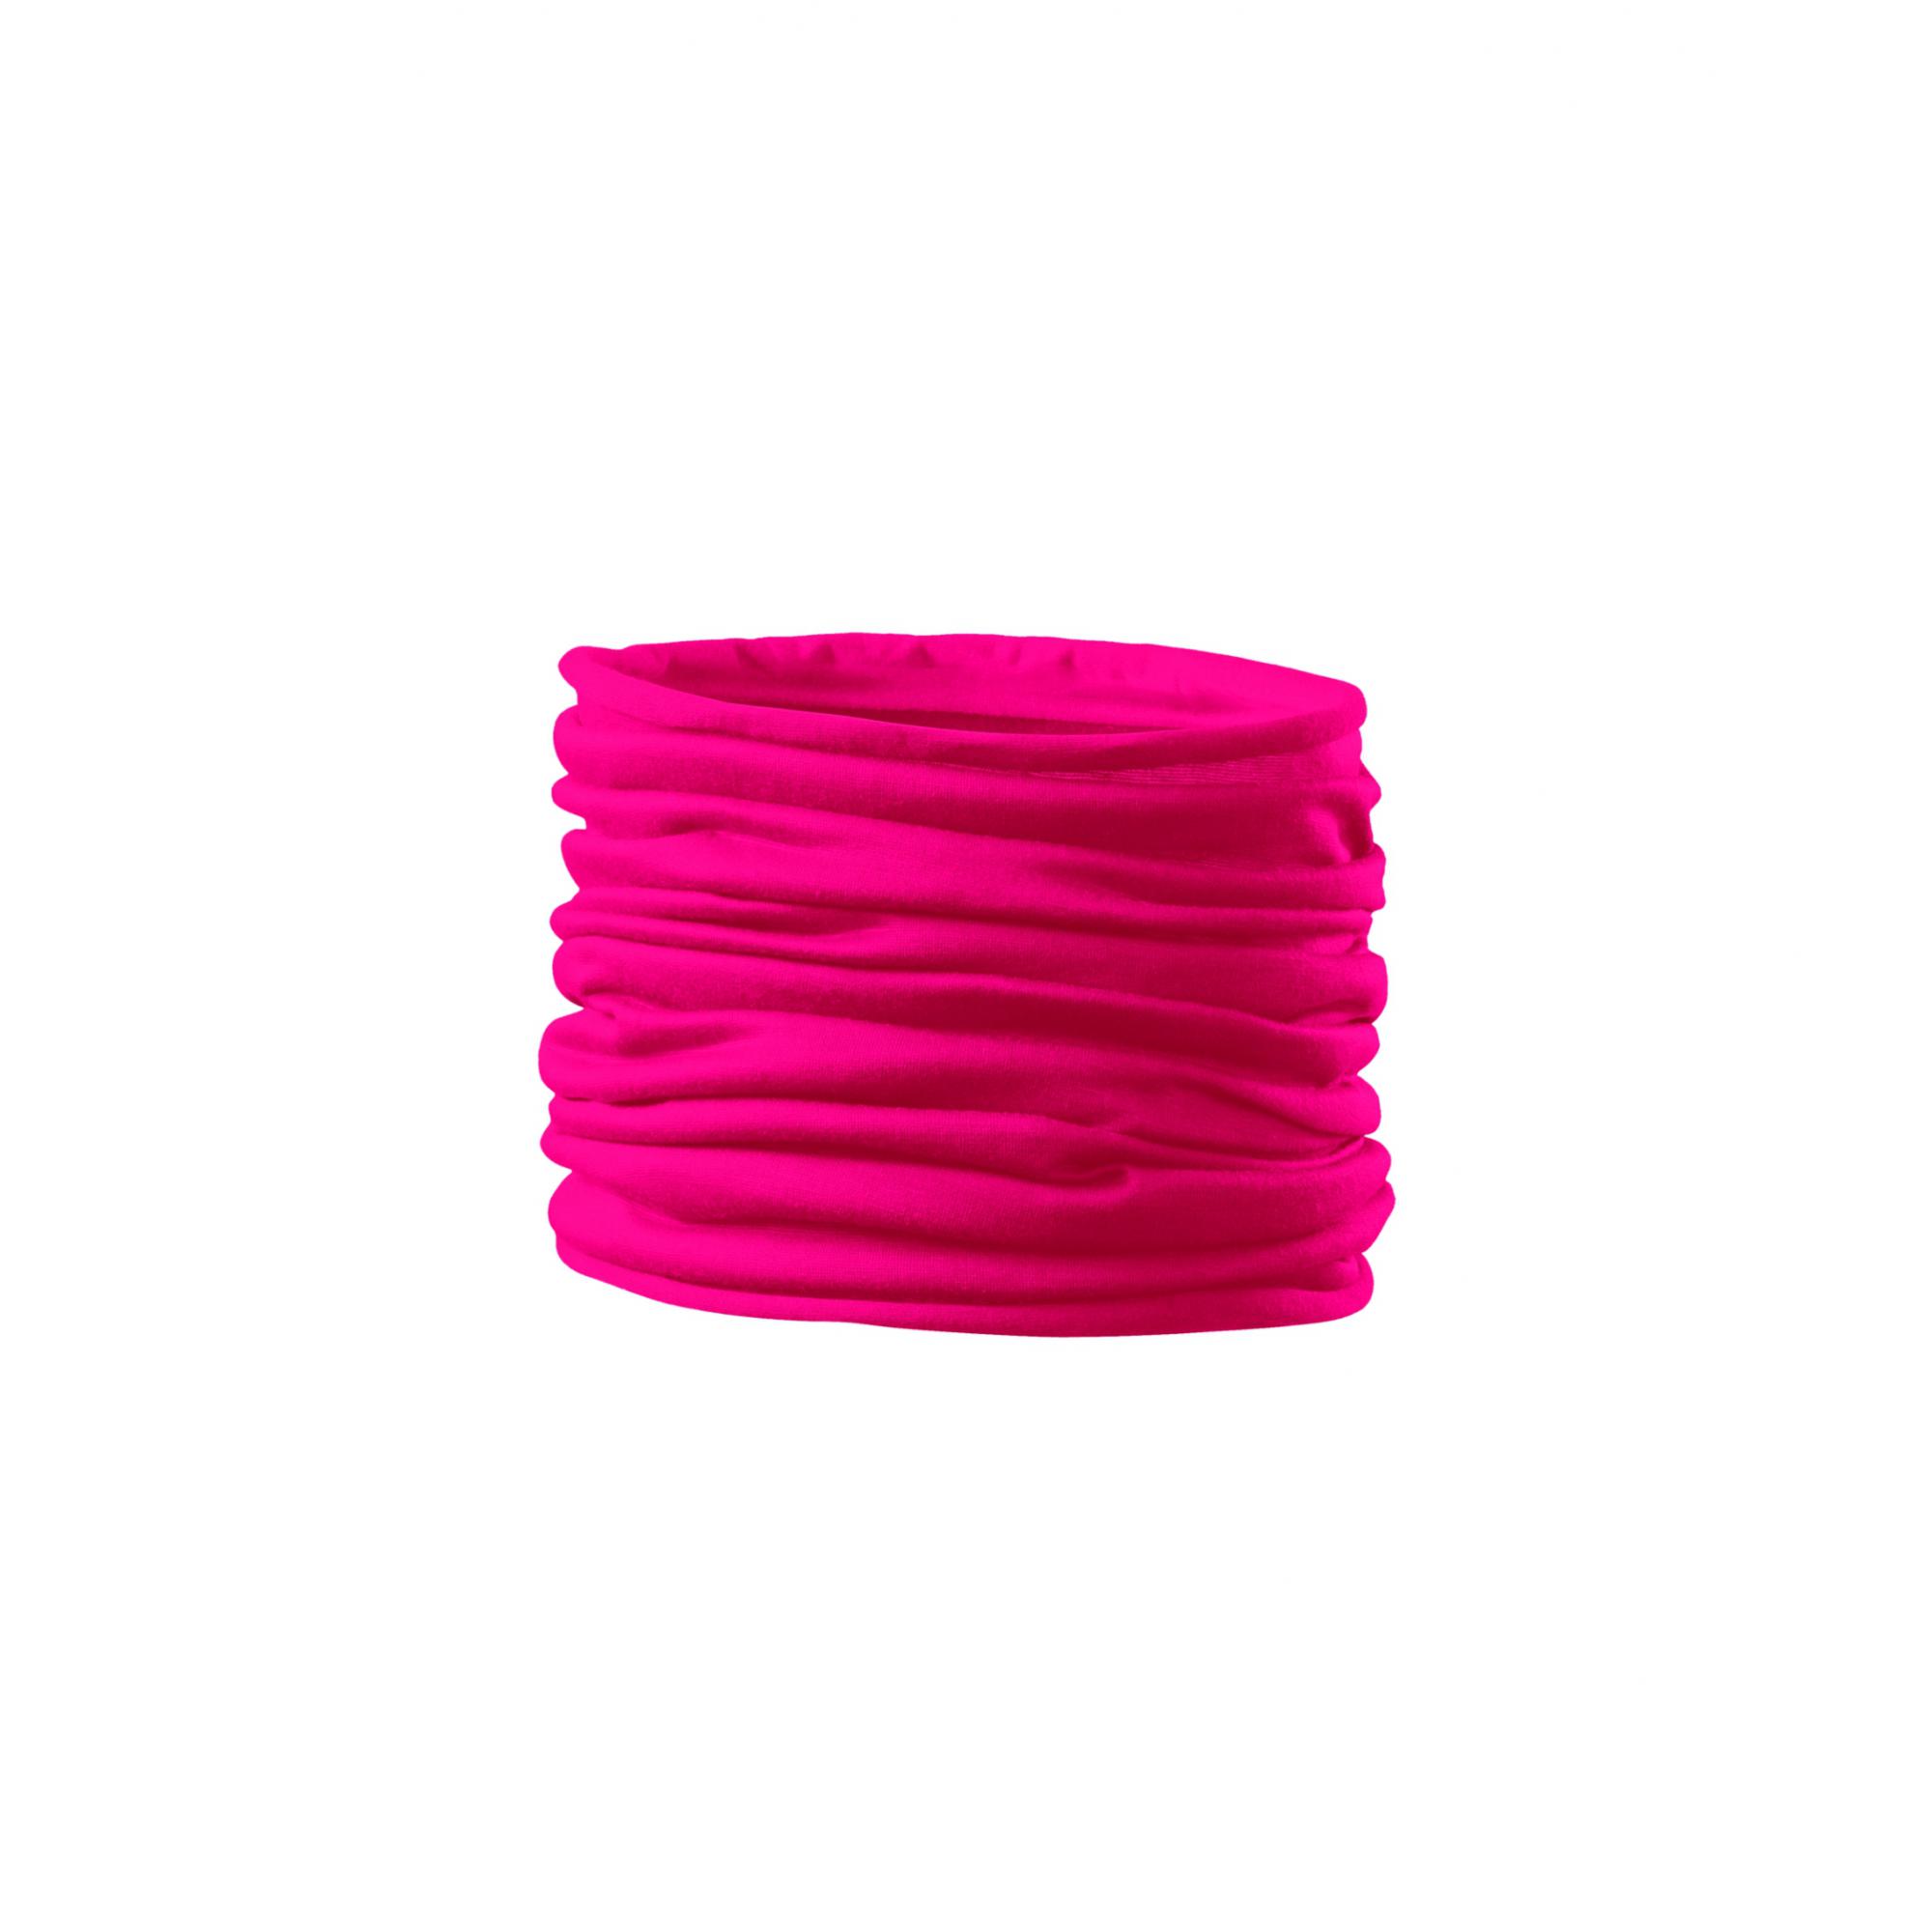 Eşarfă unisex/pentru copii Twister 328 Roz neon Marime universala